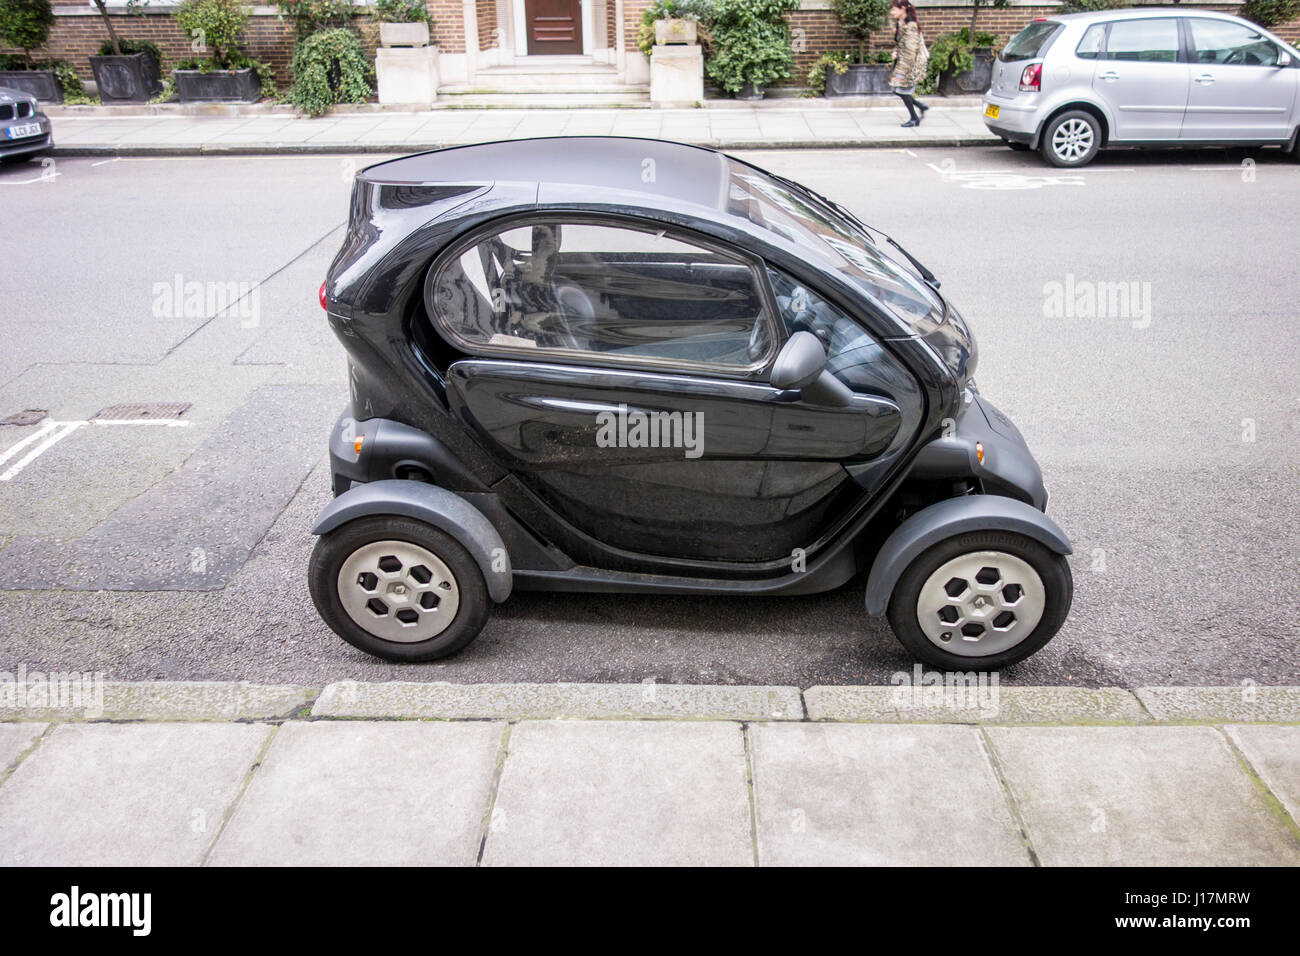 El Twizy Renault pequeño vehículo eléctrico / coche estacionado en una calle de Londres, Reino Unido Foto de stock